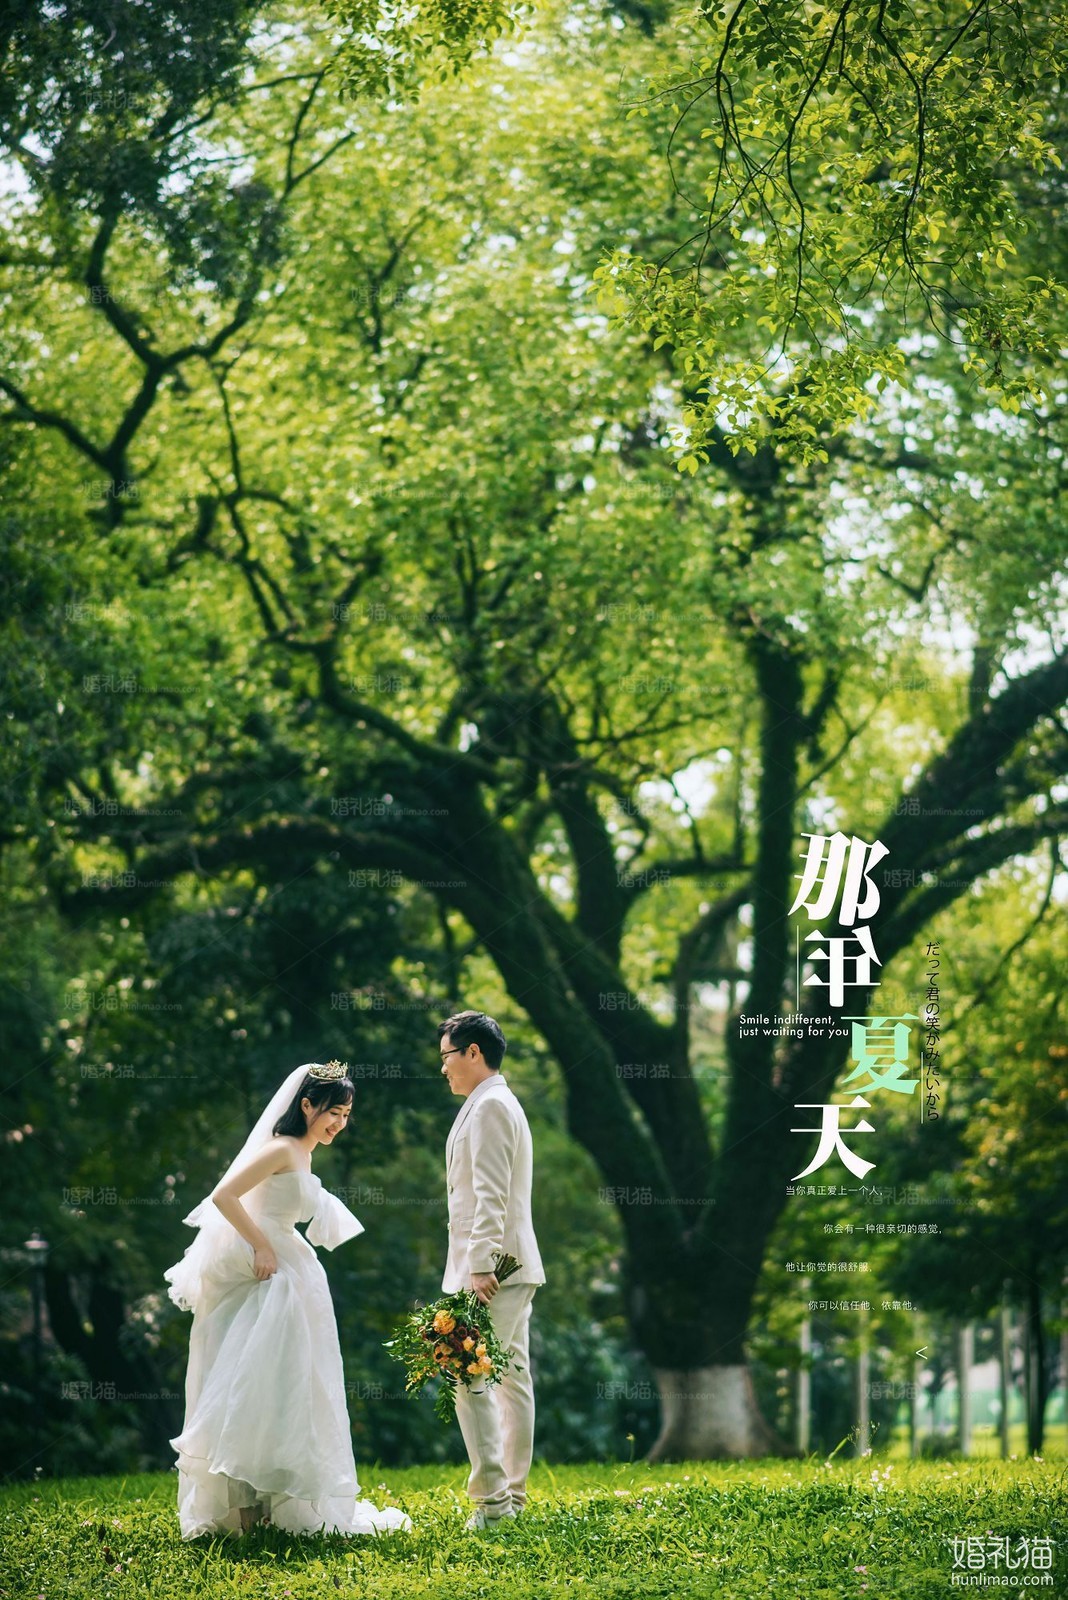 2019年7月广州婚纱照图片,,佛山婚纱照,婚纱照图片